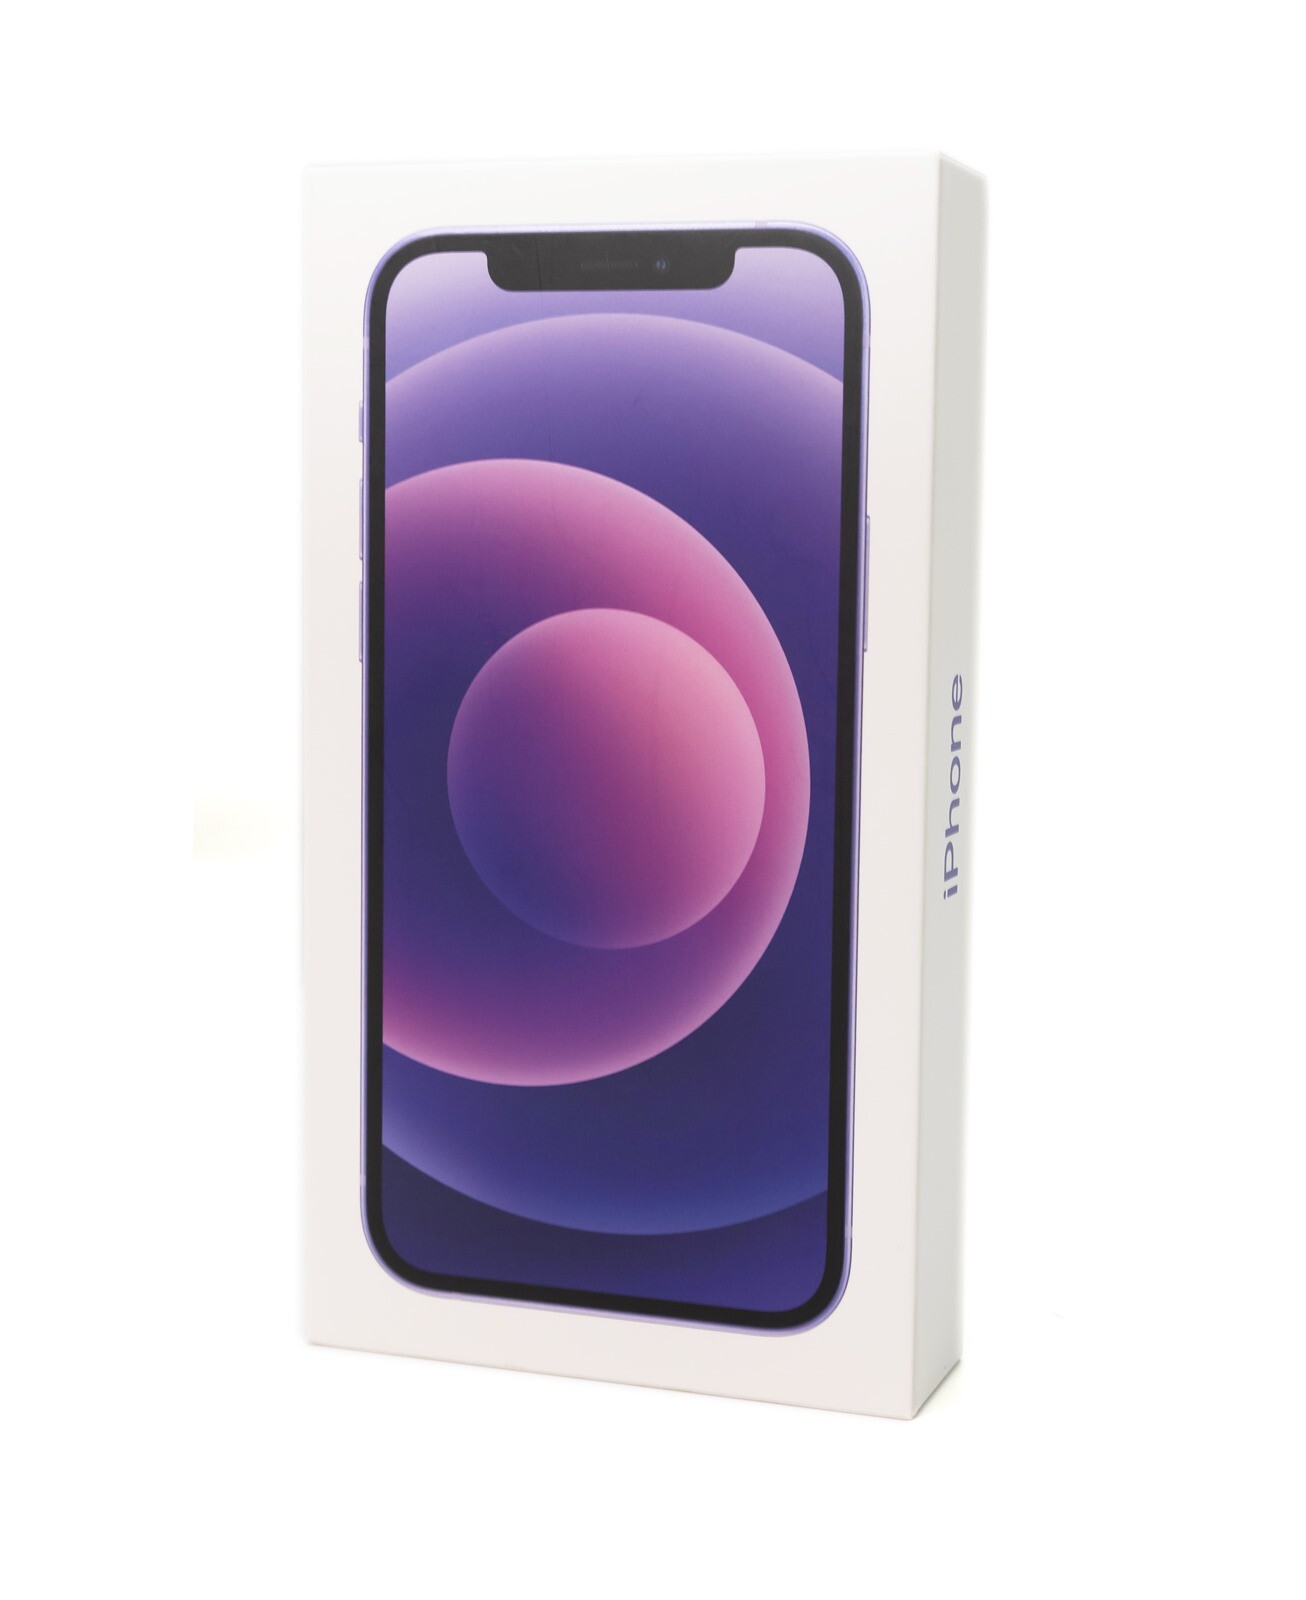 蘋果全新紫色配色報到 Iphone 12 紫色實機開箱動手玩 還有與iphone 11 紫比對 3c 達人廖阿輝